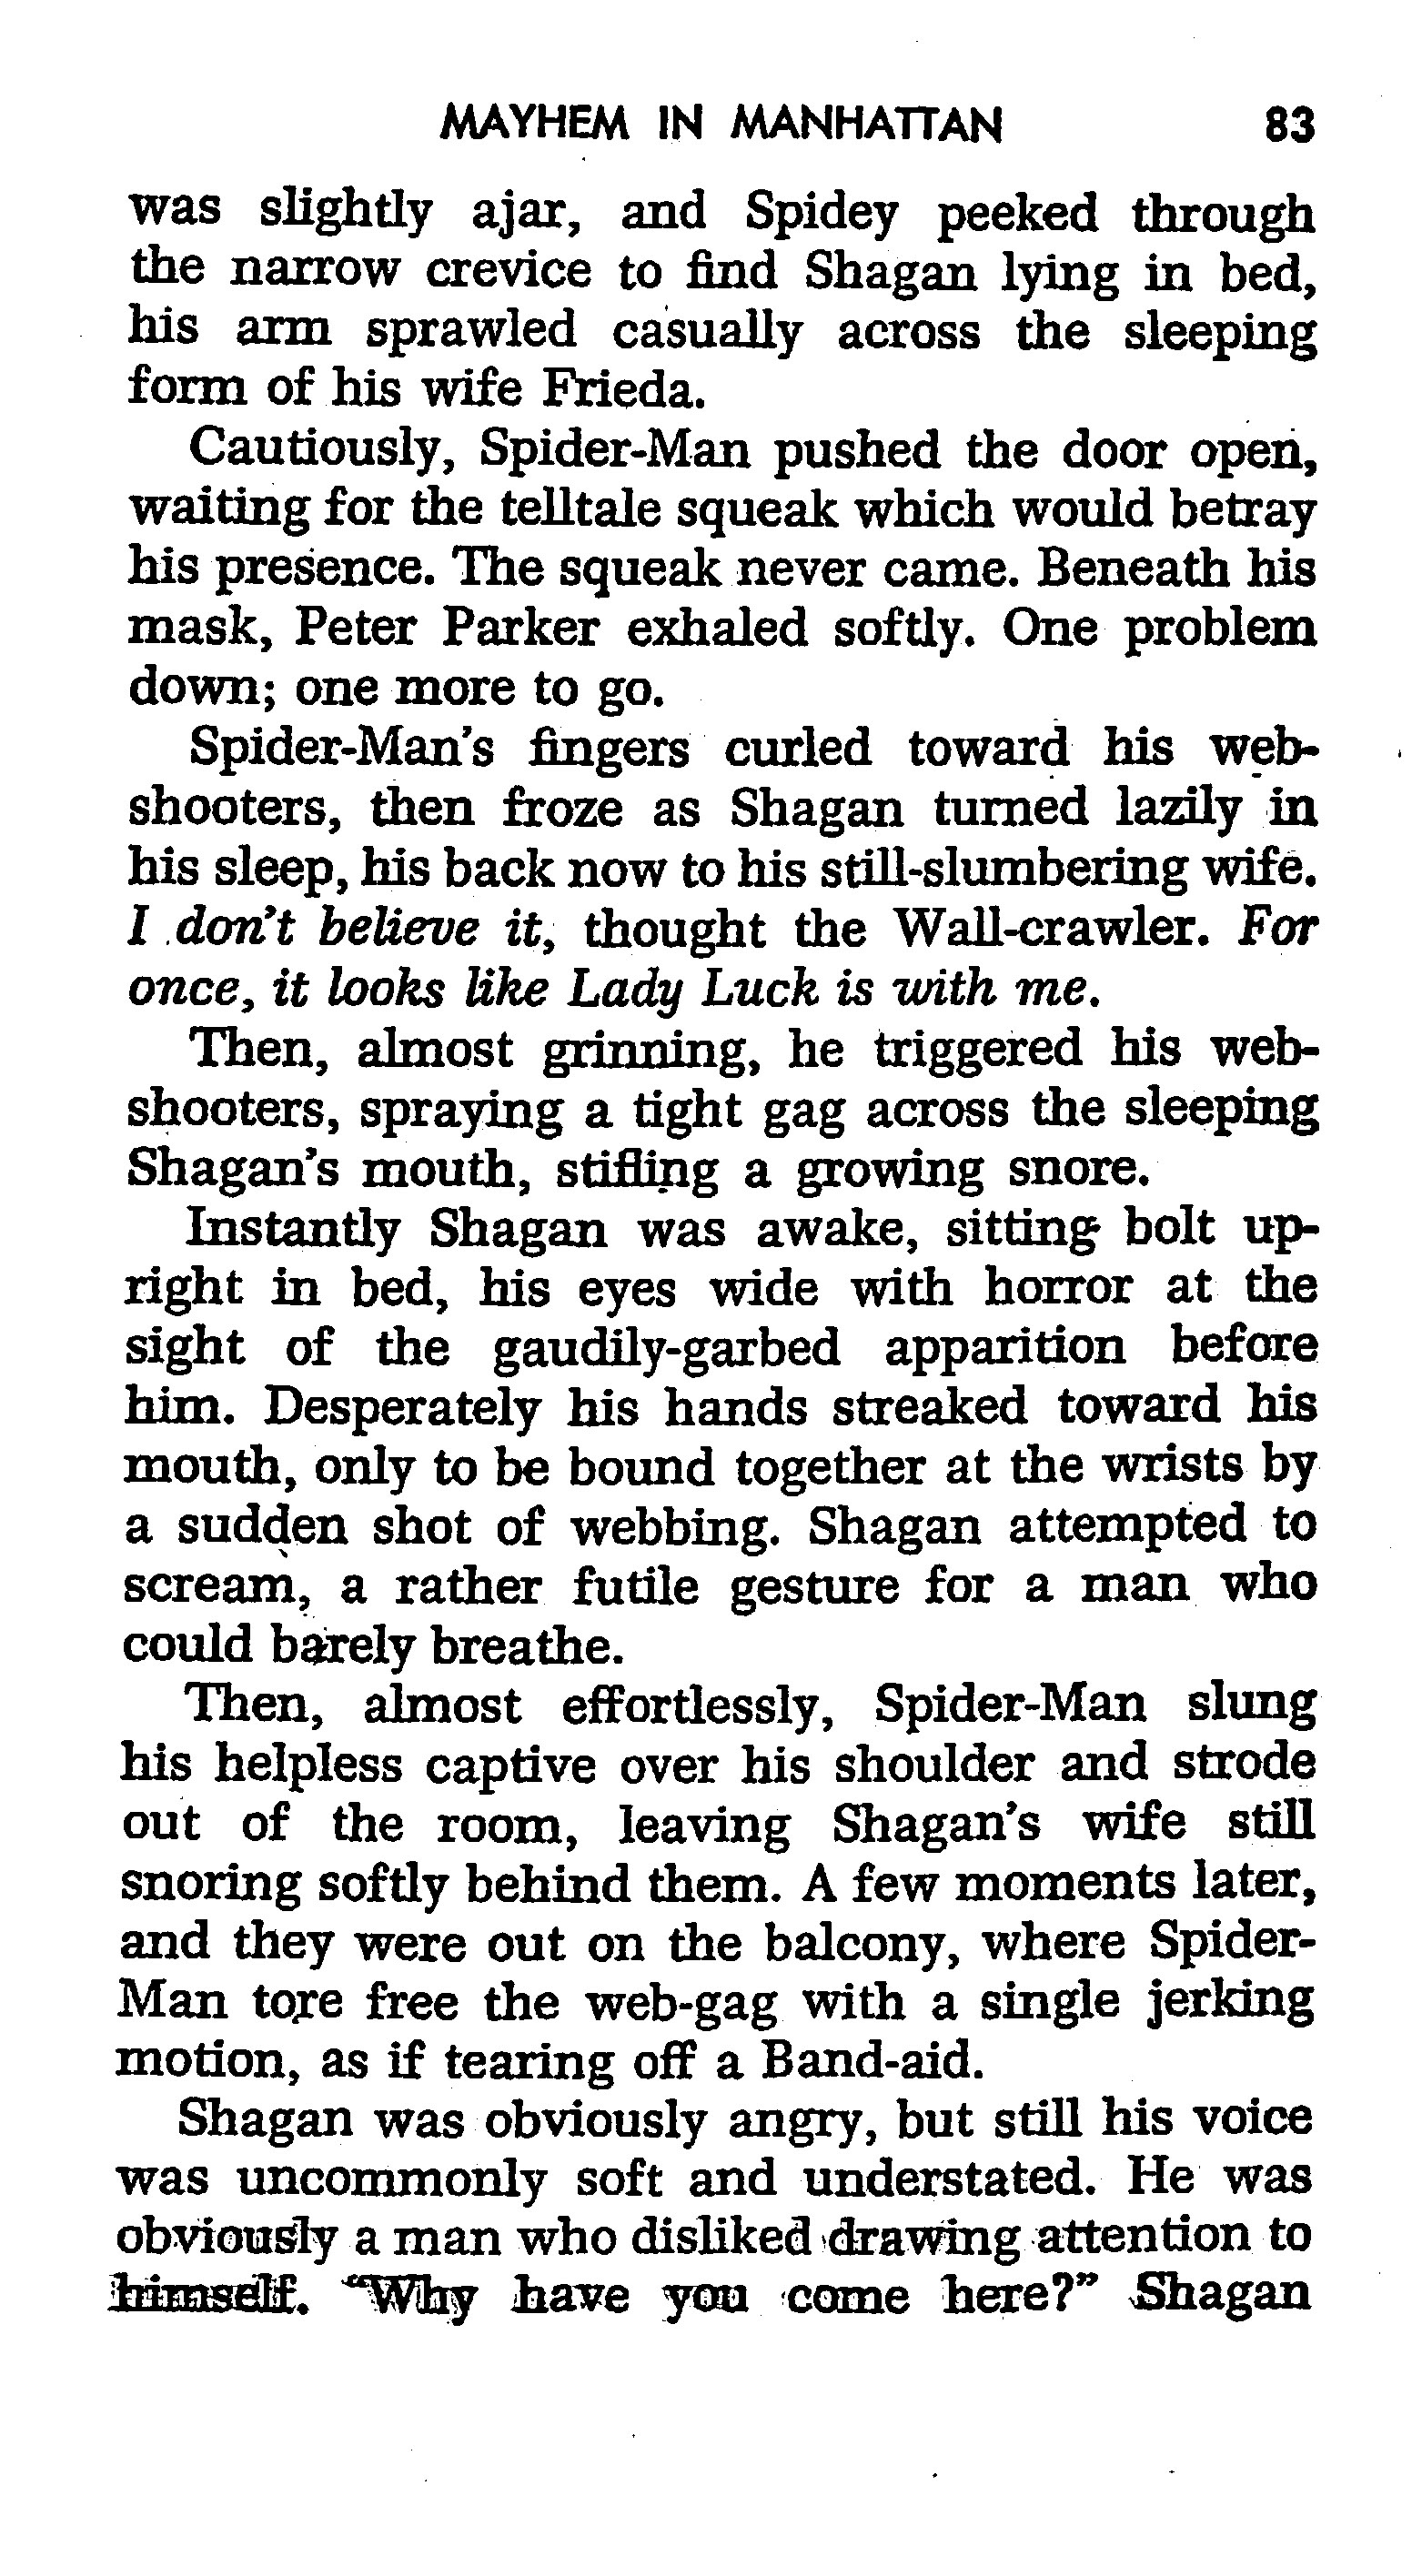 Read online The Amazing Spider-Man: Mayhem in Manhattan comic -  Issue # TPB (Part 1) - 84